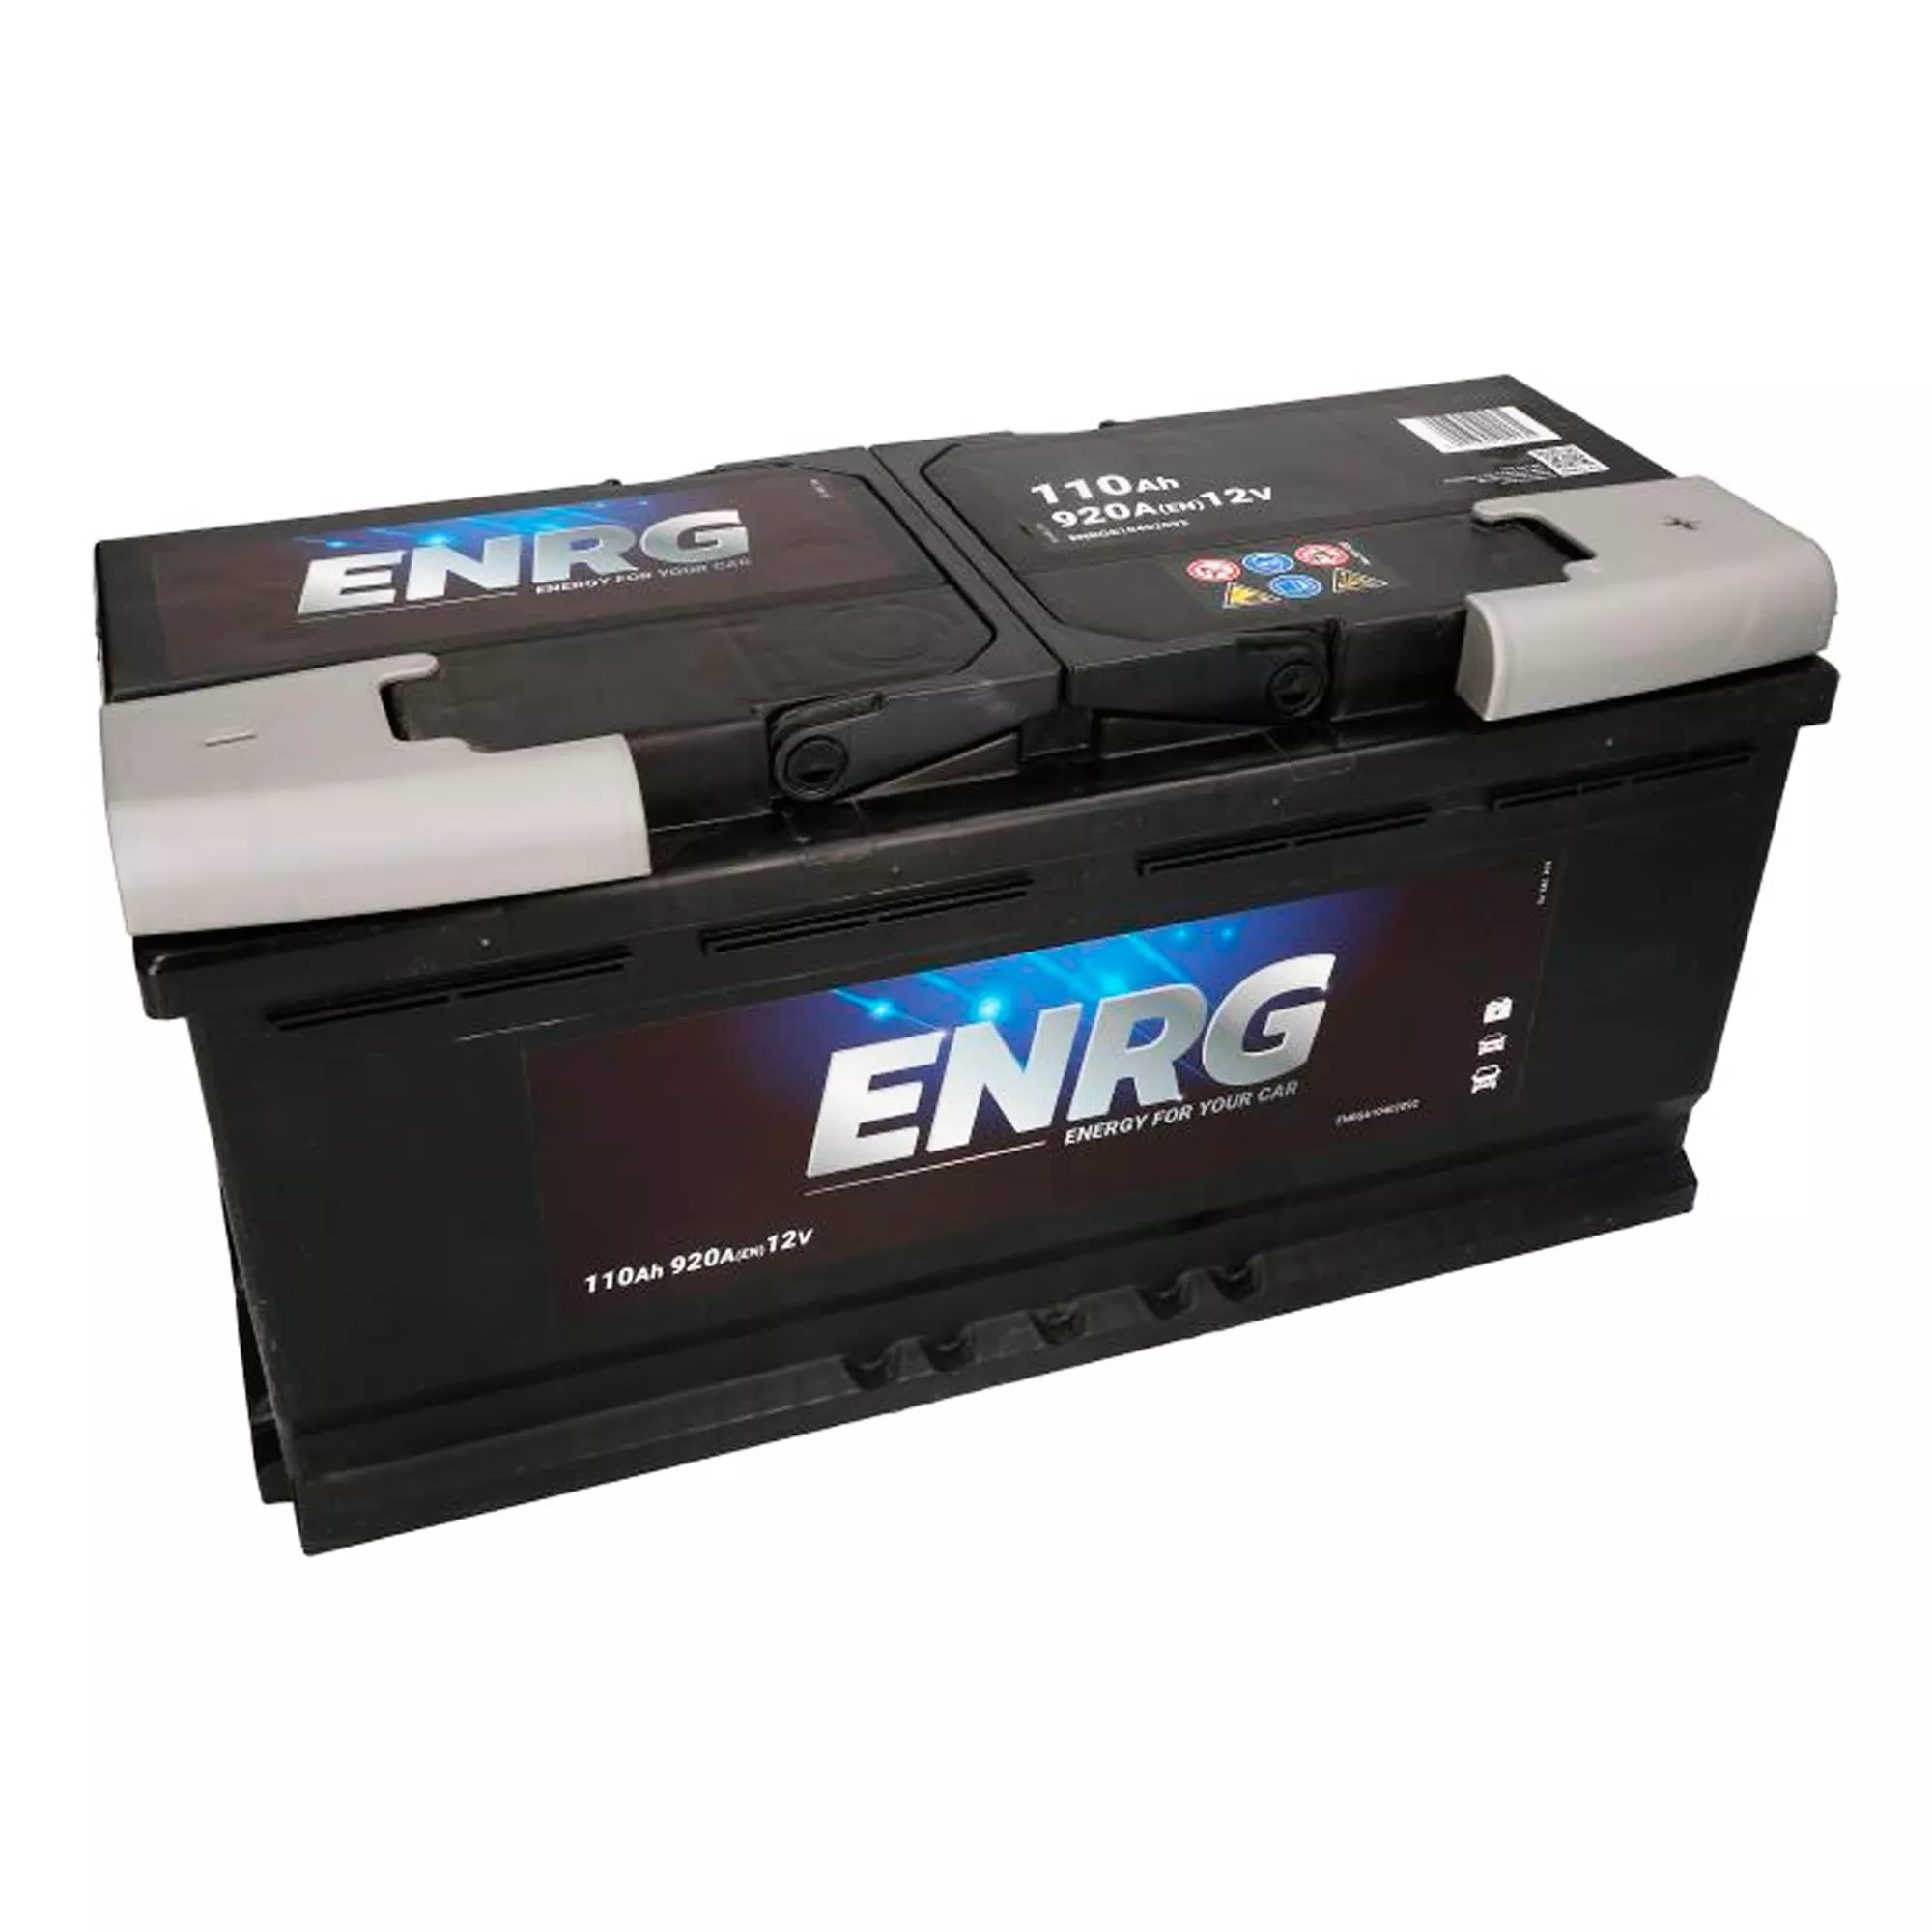 Автомобильный аккумулятор ENRG 12В 110AH АзЕ 920А BUDGET (ENRG610402092)